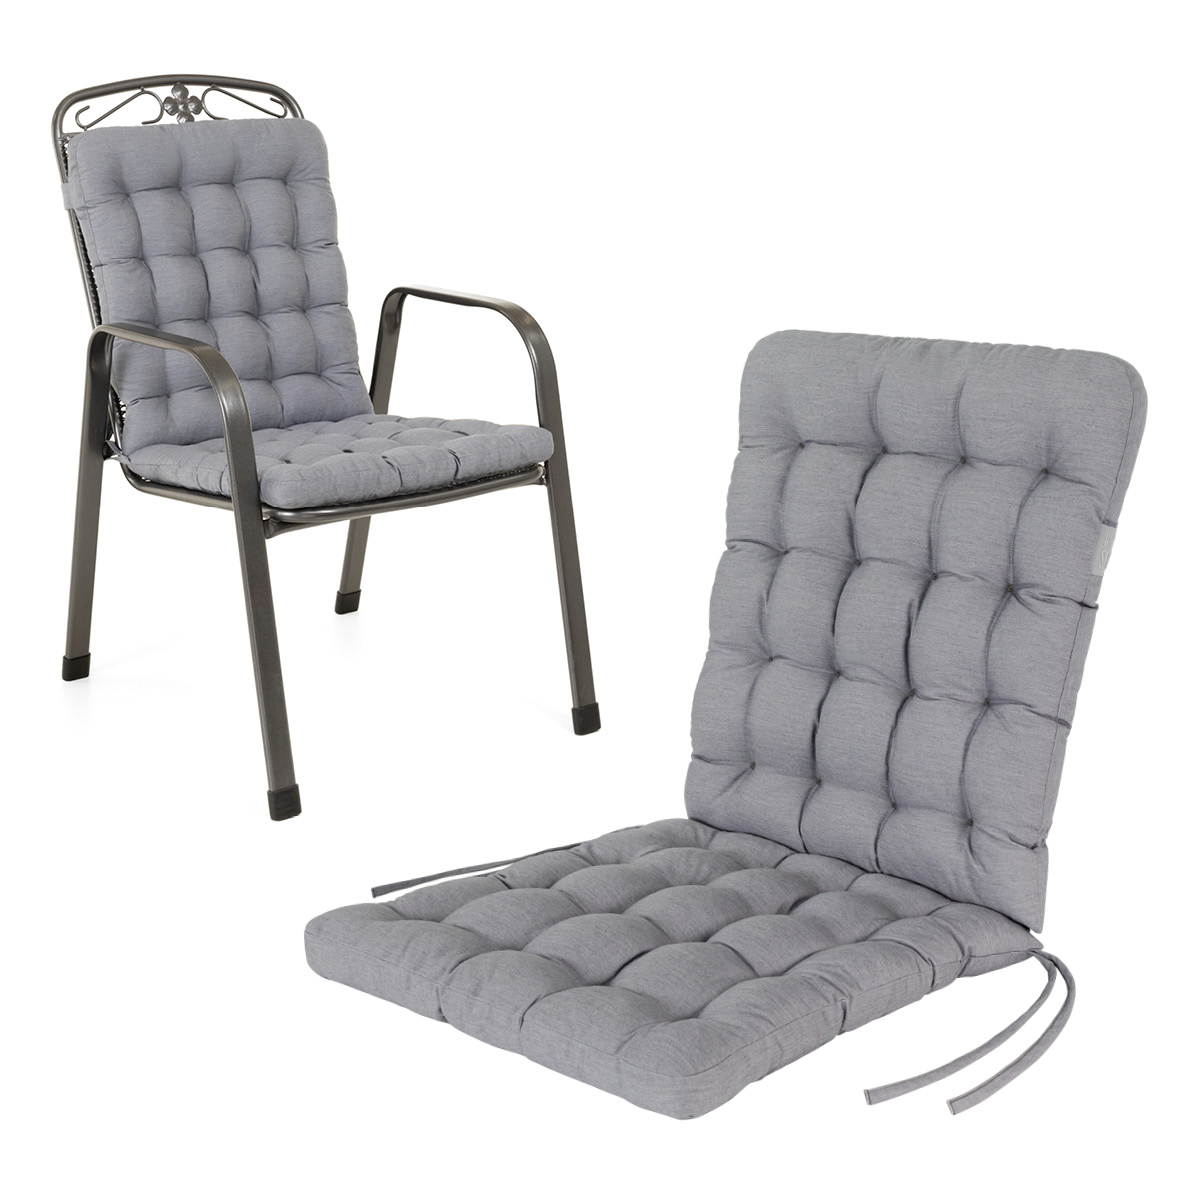 Cuscino per sedia con schienale basso 100x48 cm | Grigio chiaro | 1 pezzo